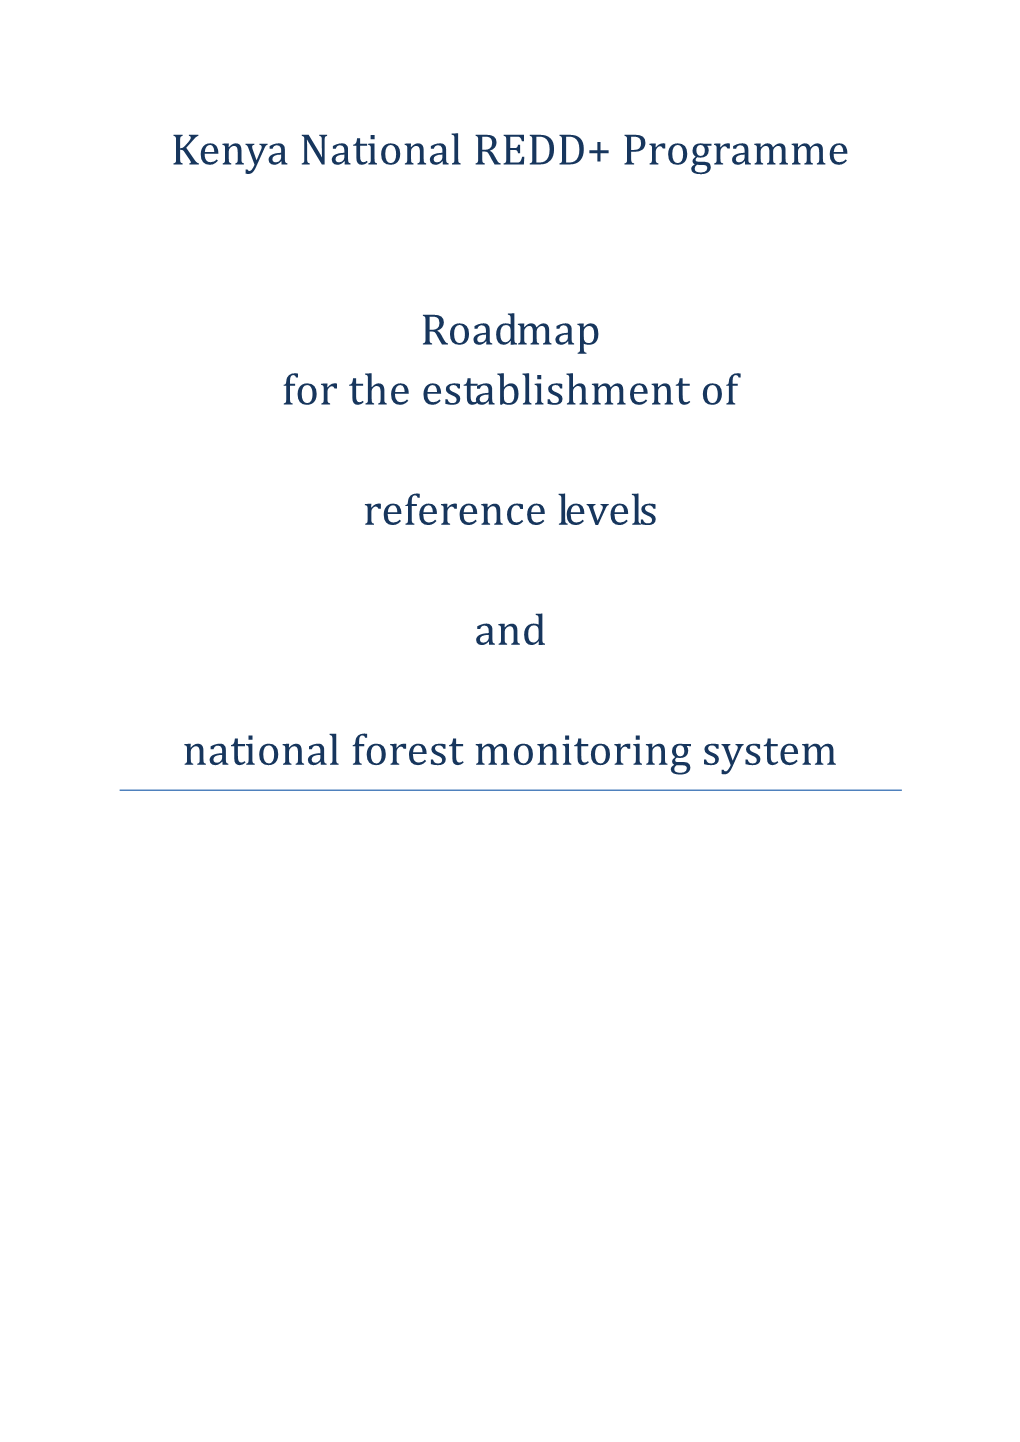 Kenya Roadmap RL+NFMS